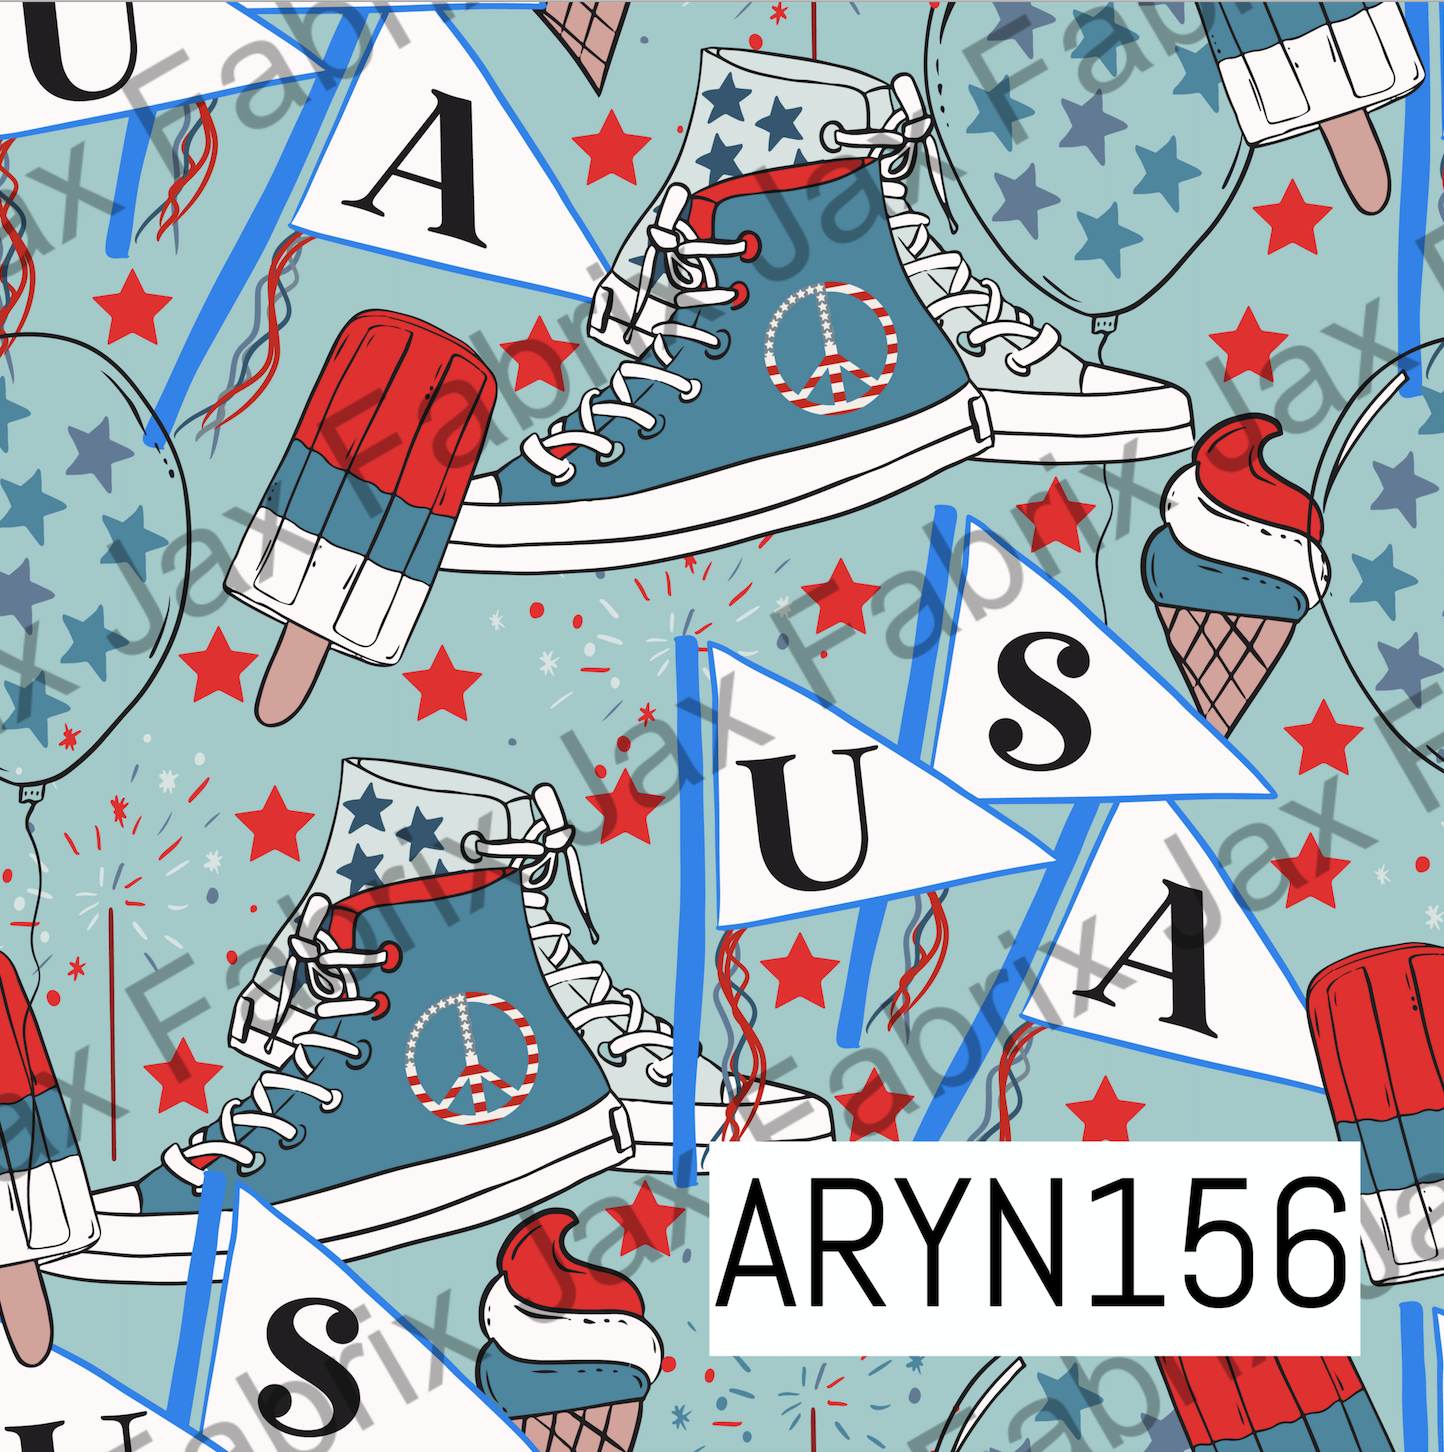 USA Blue ARYN156